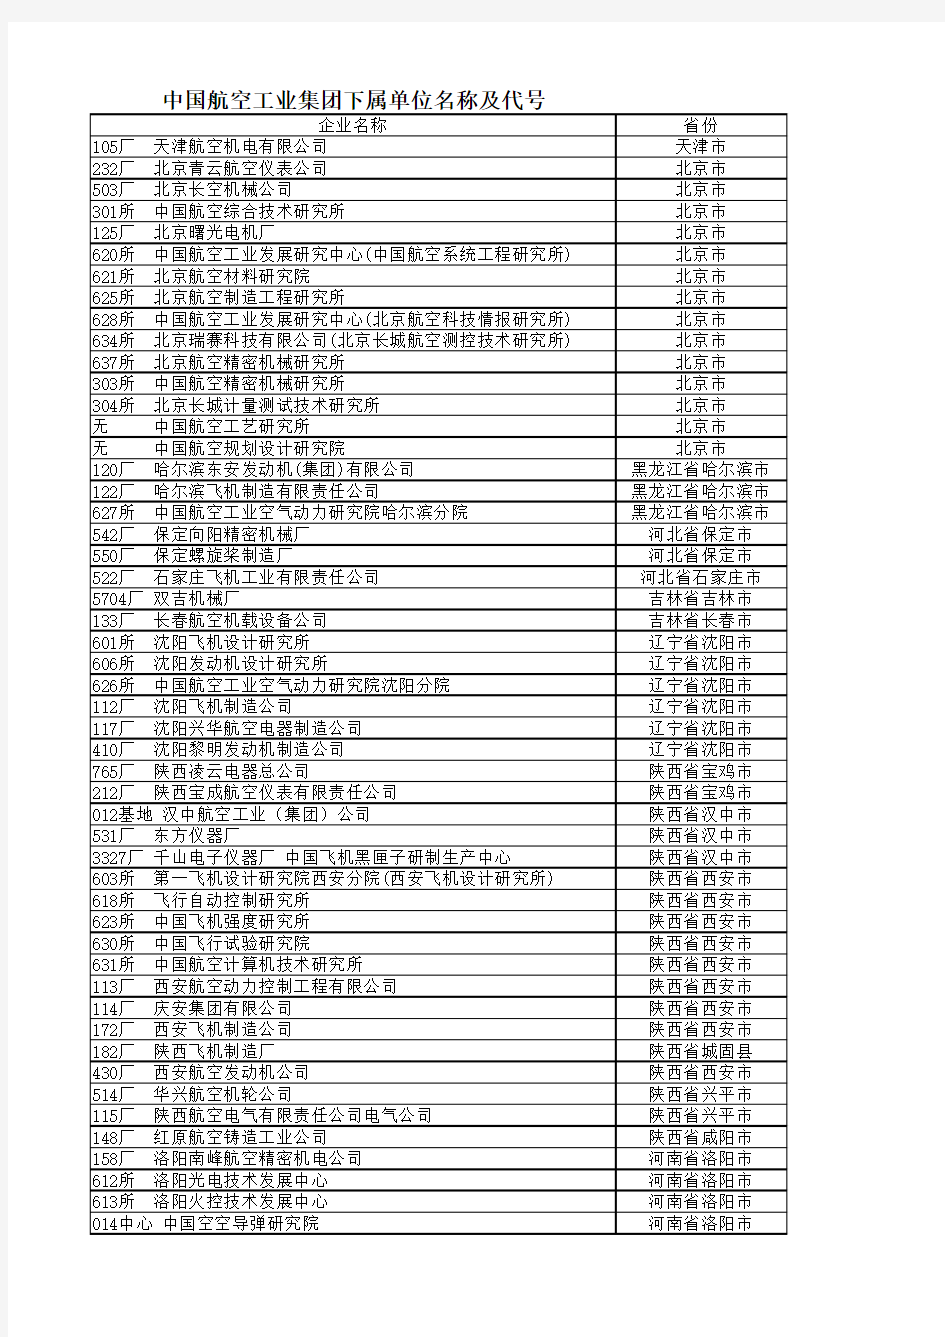 中航工业集团下属企业一览表(含代码)最新